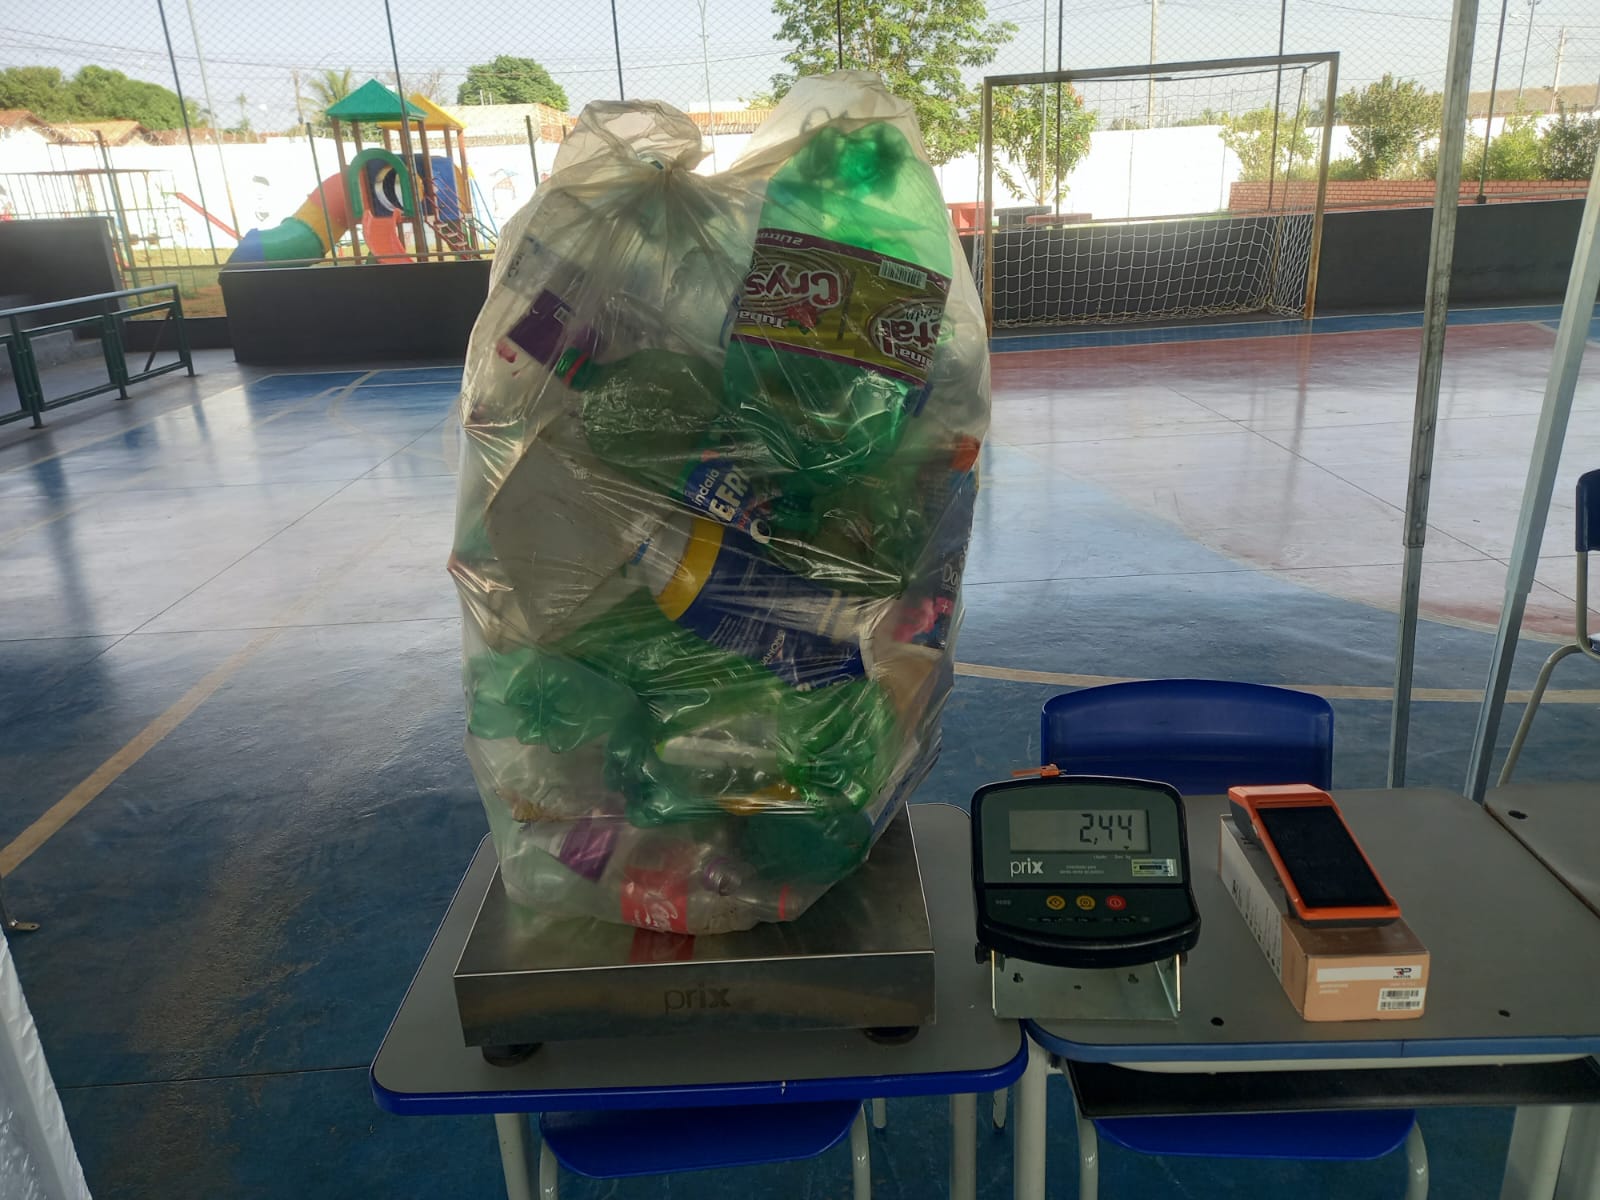 Distribuidora incentiva troca de materiais recicláveis por descontos na conta de energia